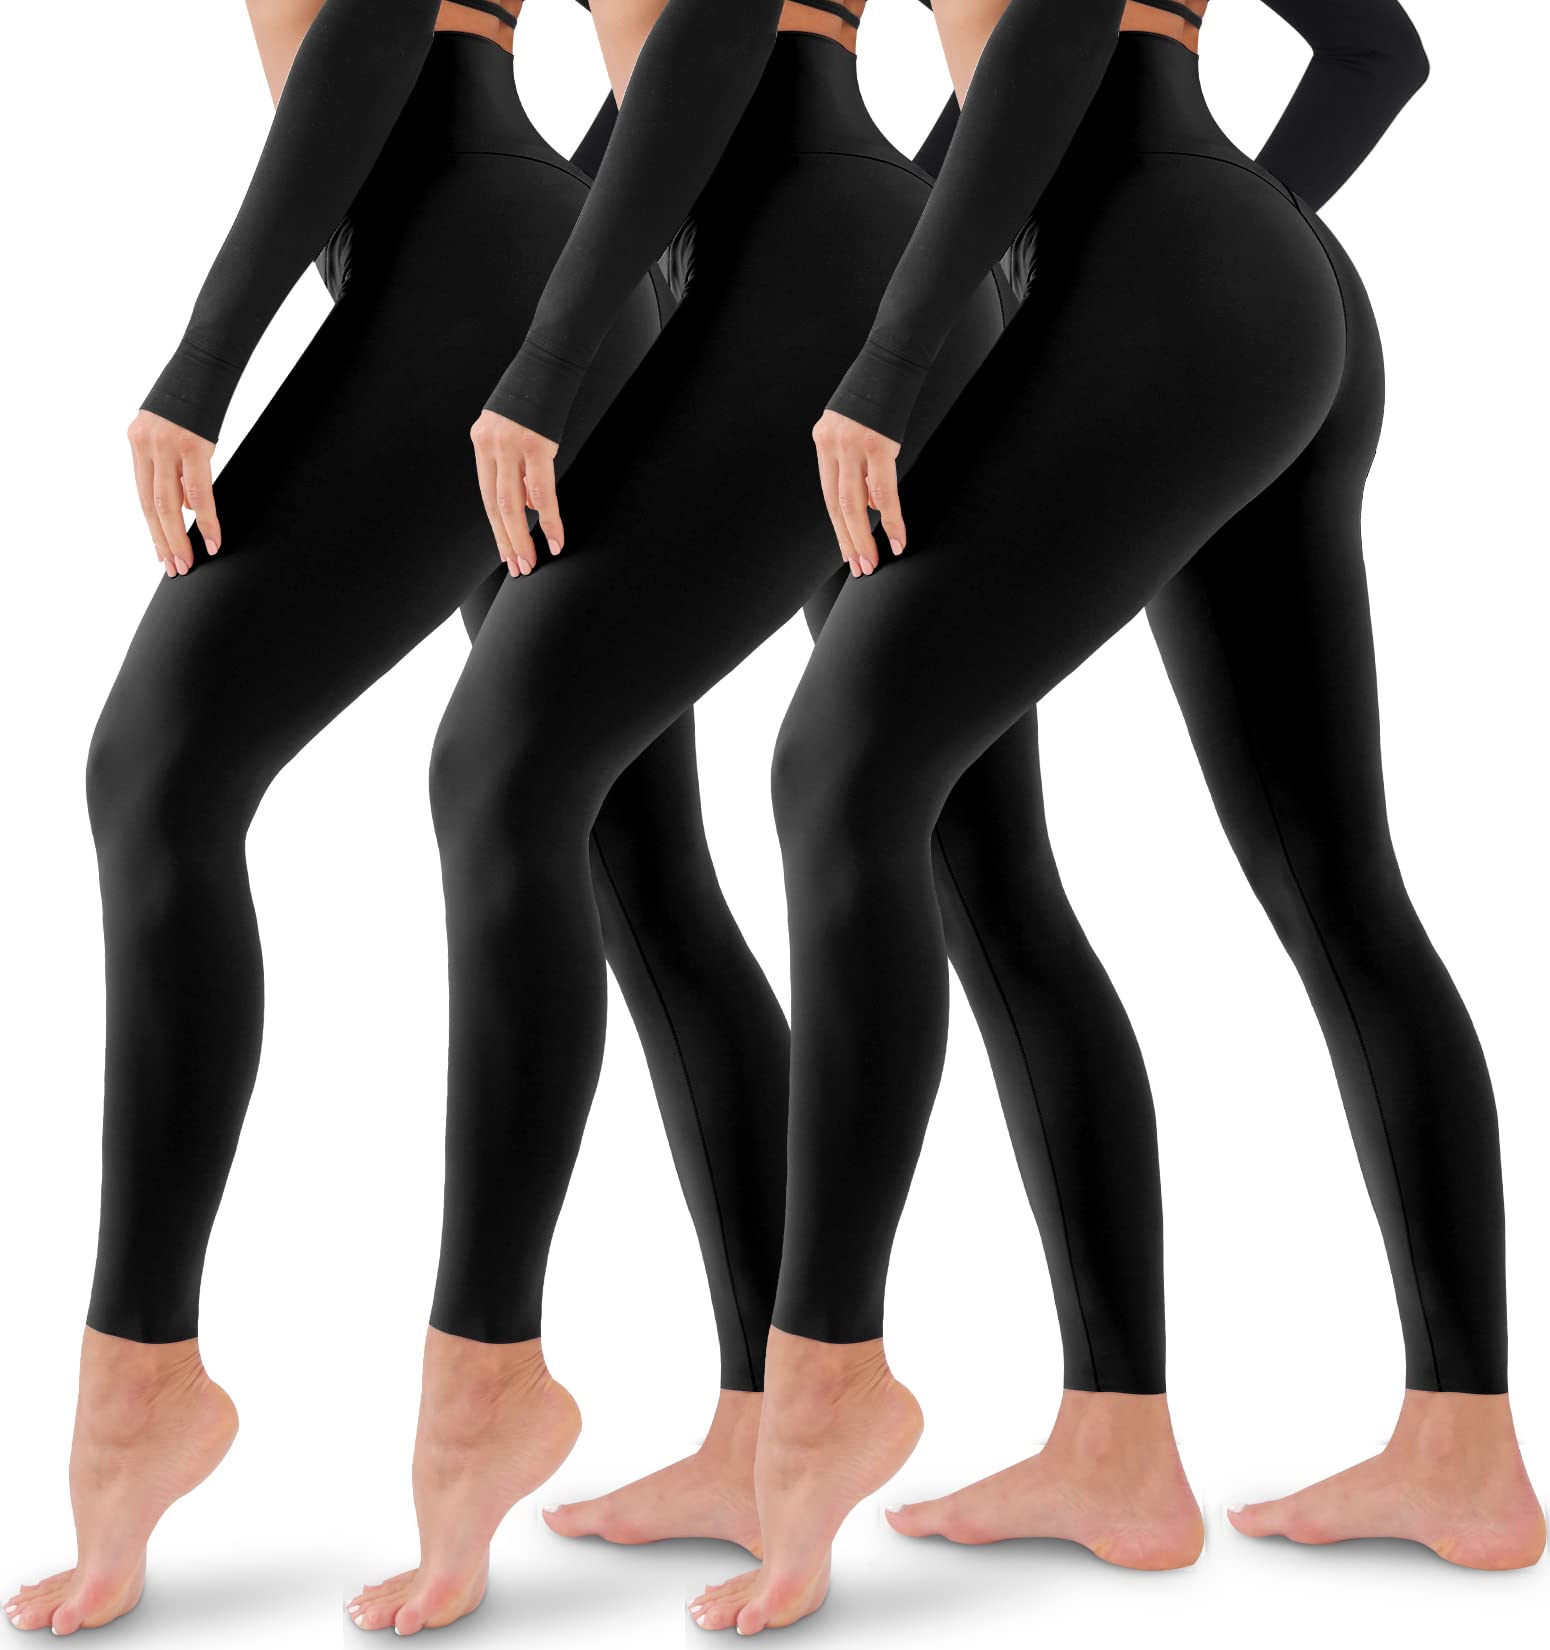 Buy Natural Feelings High Waisted Leggings for Women Pack Slim